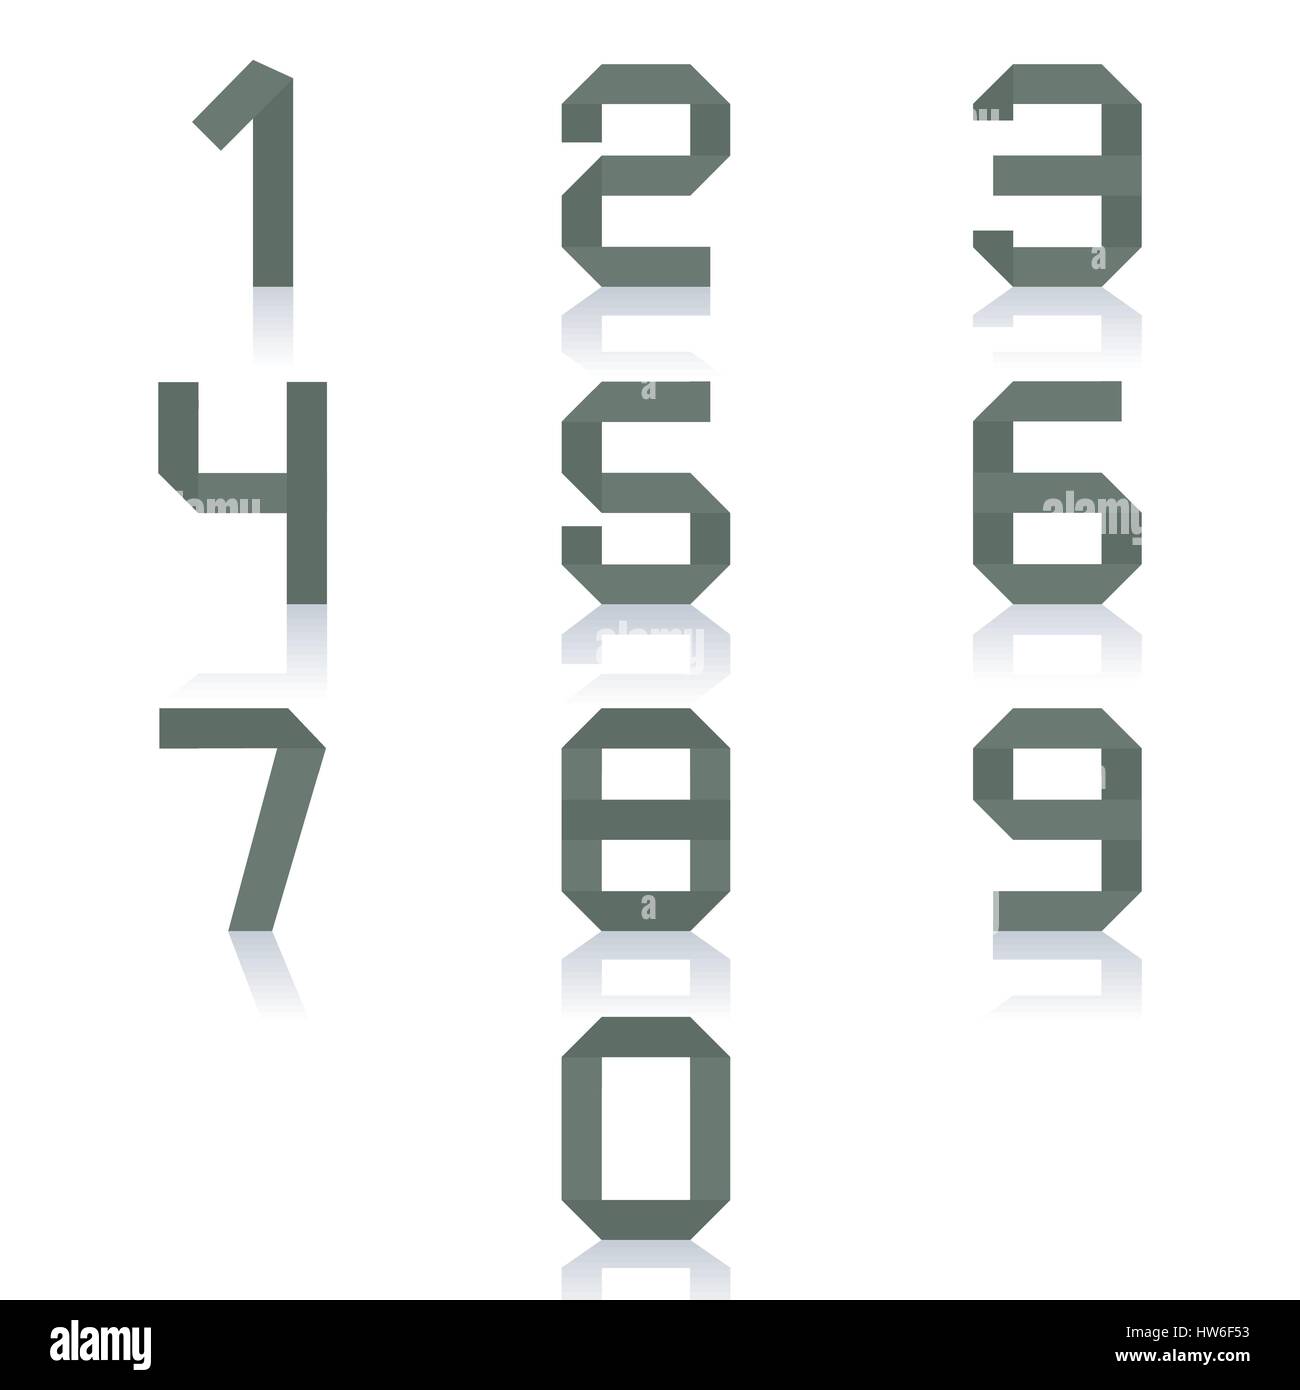 Définissez le nombre de zéro à neuf, isolé sur fond blanc avec reflet miroir,  vector illustration Image Vectorielle Stock - Alamy